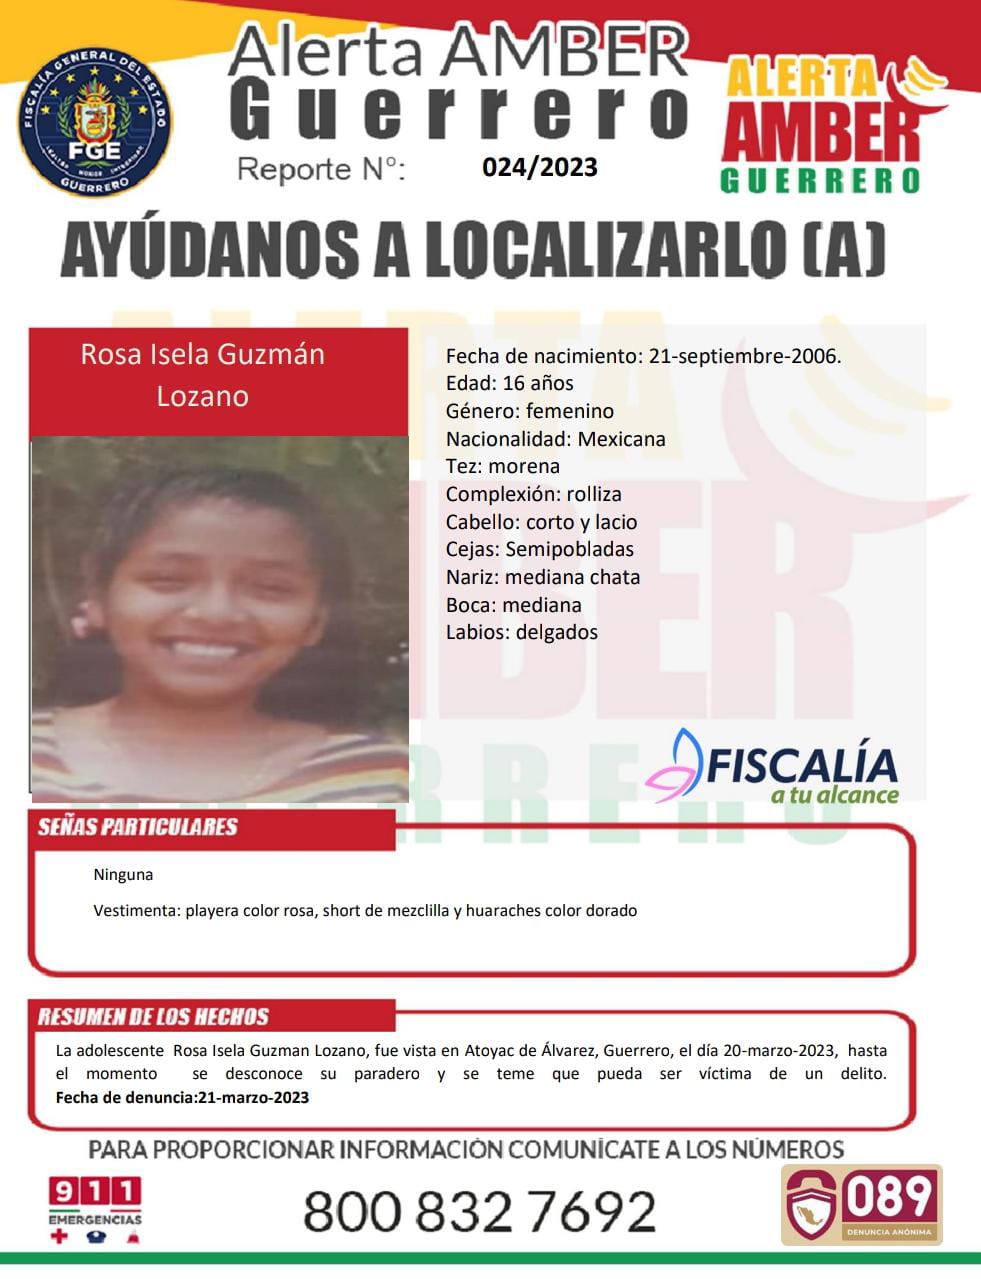 Fiscalía General Del Estado Solicita Su Colaboración Para Localizar A La Menor Rosa Isela Guzmán Lozano.